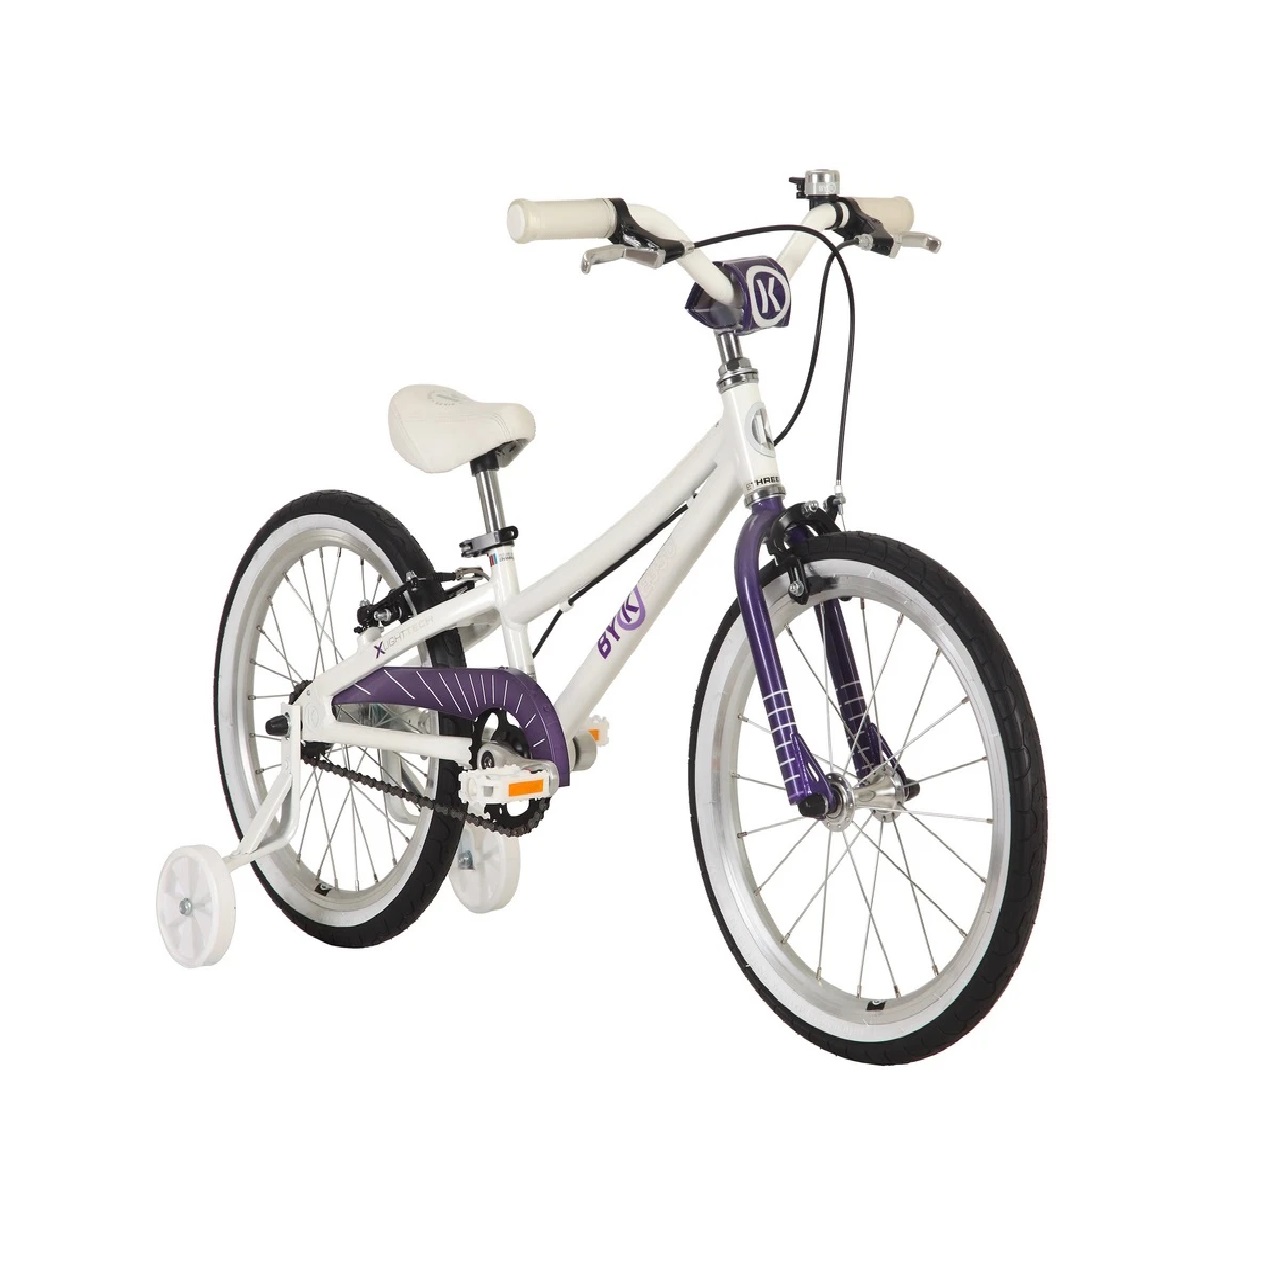 ByK E-350 18" Single Speed Kids Bike Age: 3-6 Years -Purple